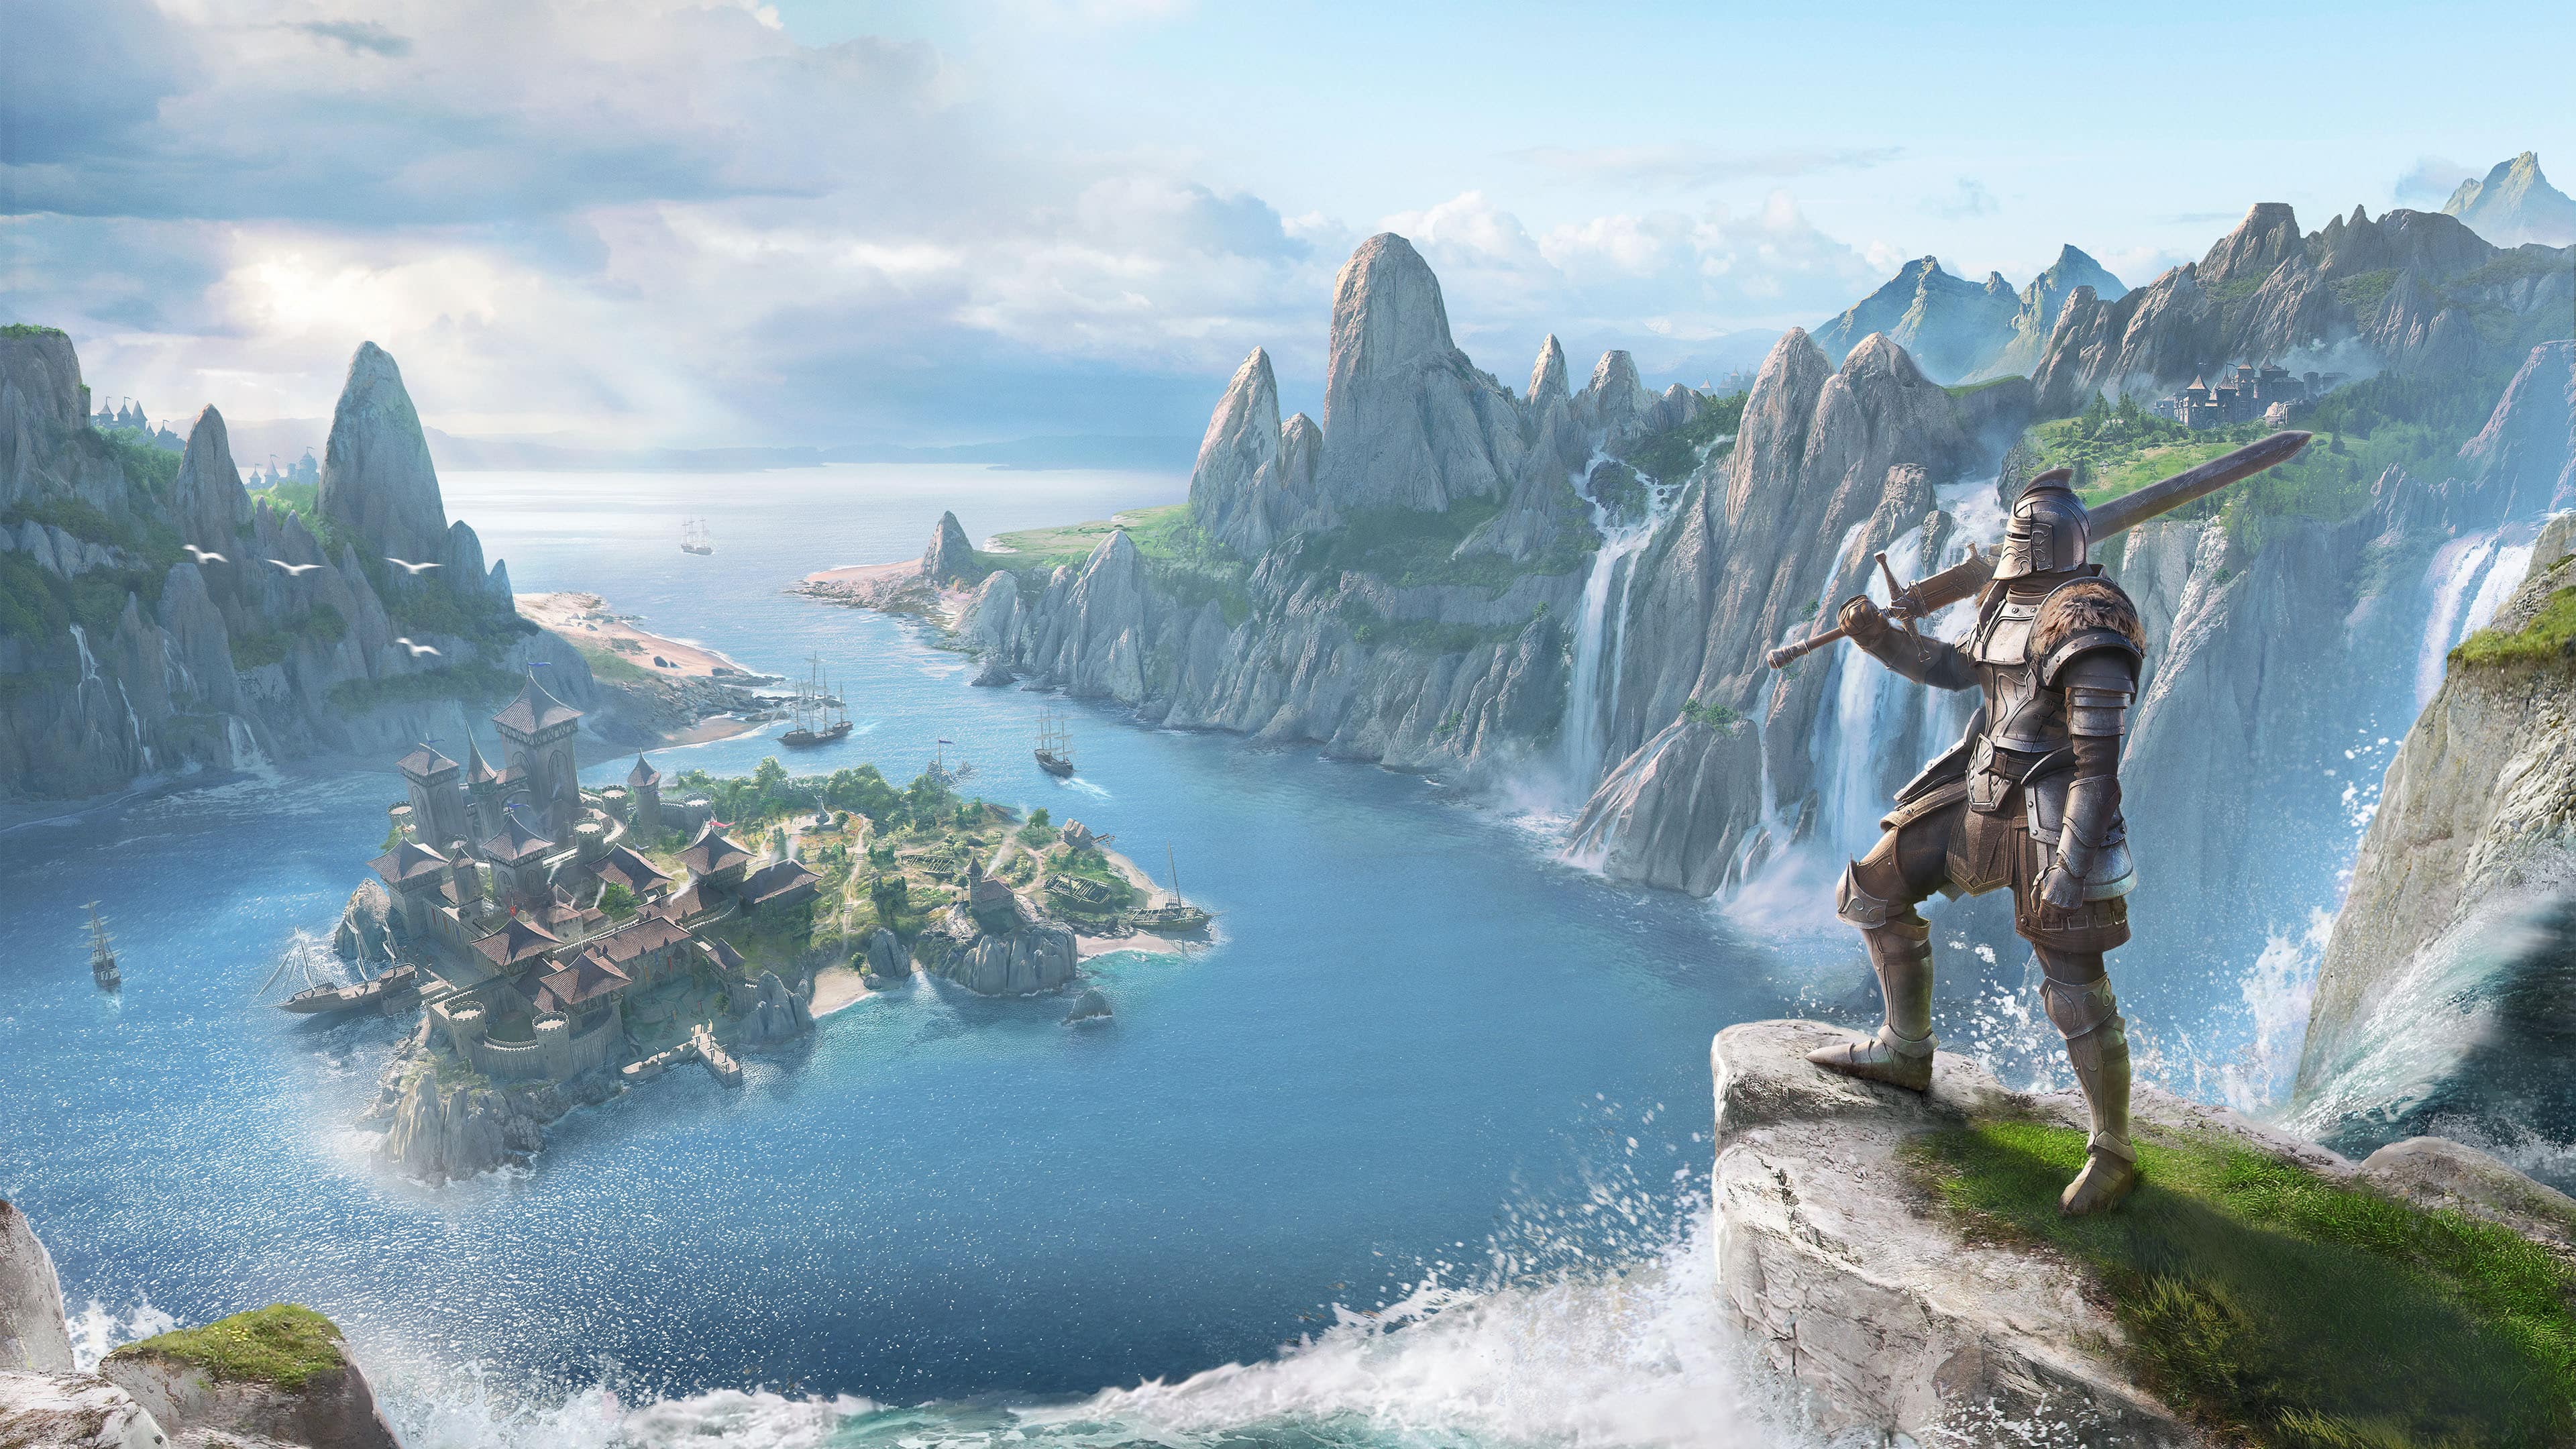 Скачать обои The Elder Scrolls Online: Высокий Остров на телефон бесплатно